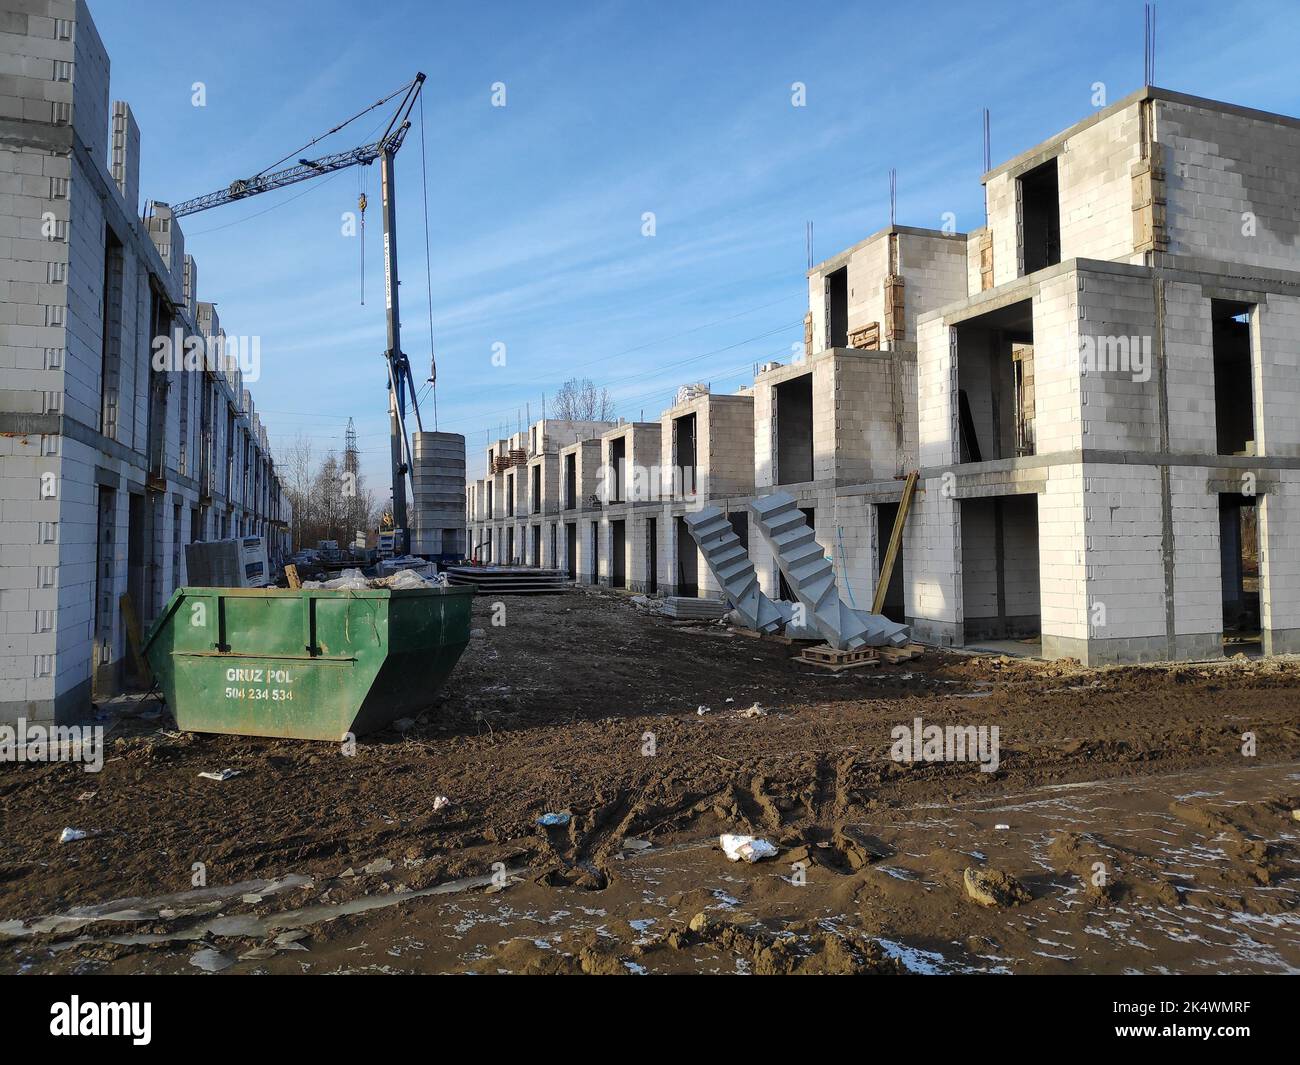 BYTOM, POLAND - JANUARY 9, 2022: Bolko neighborhood construction in Bytom, Poland. The developer is Renner Group. Stock Photo